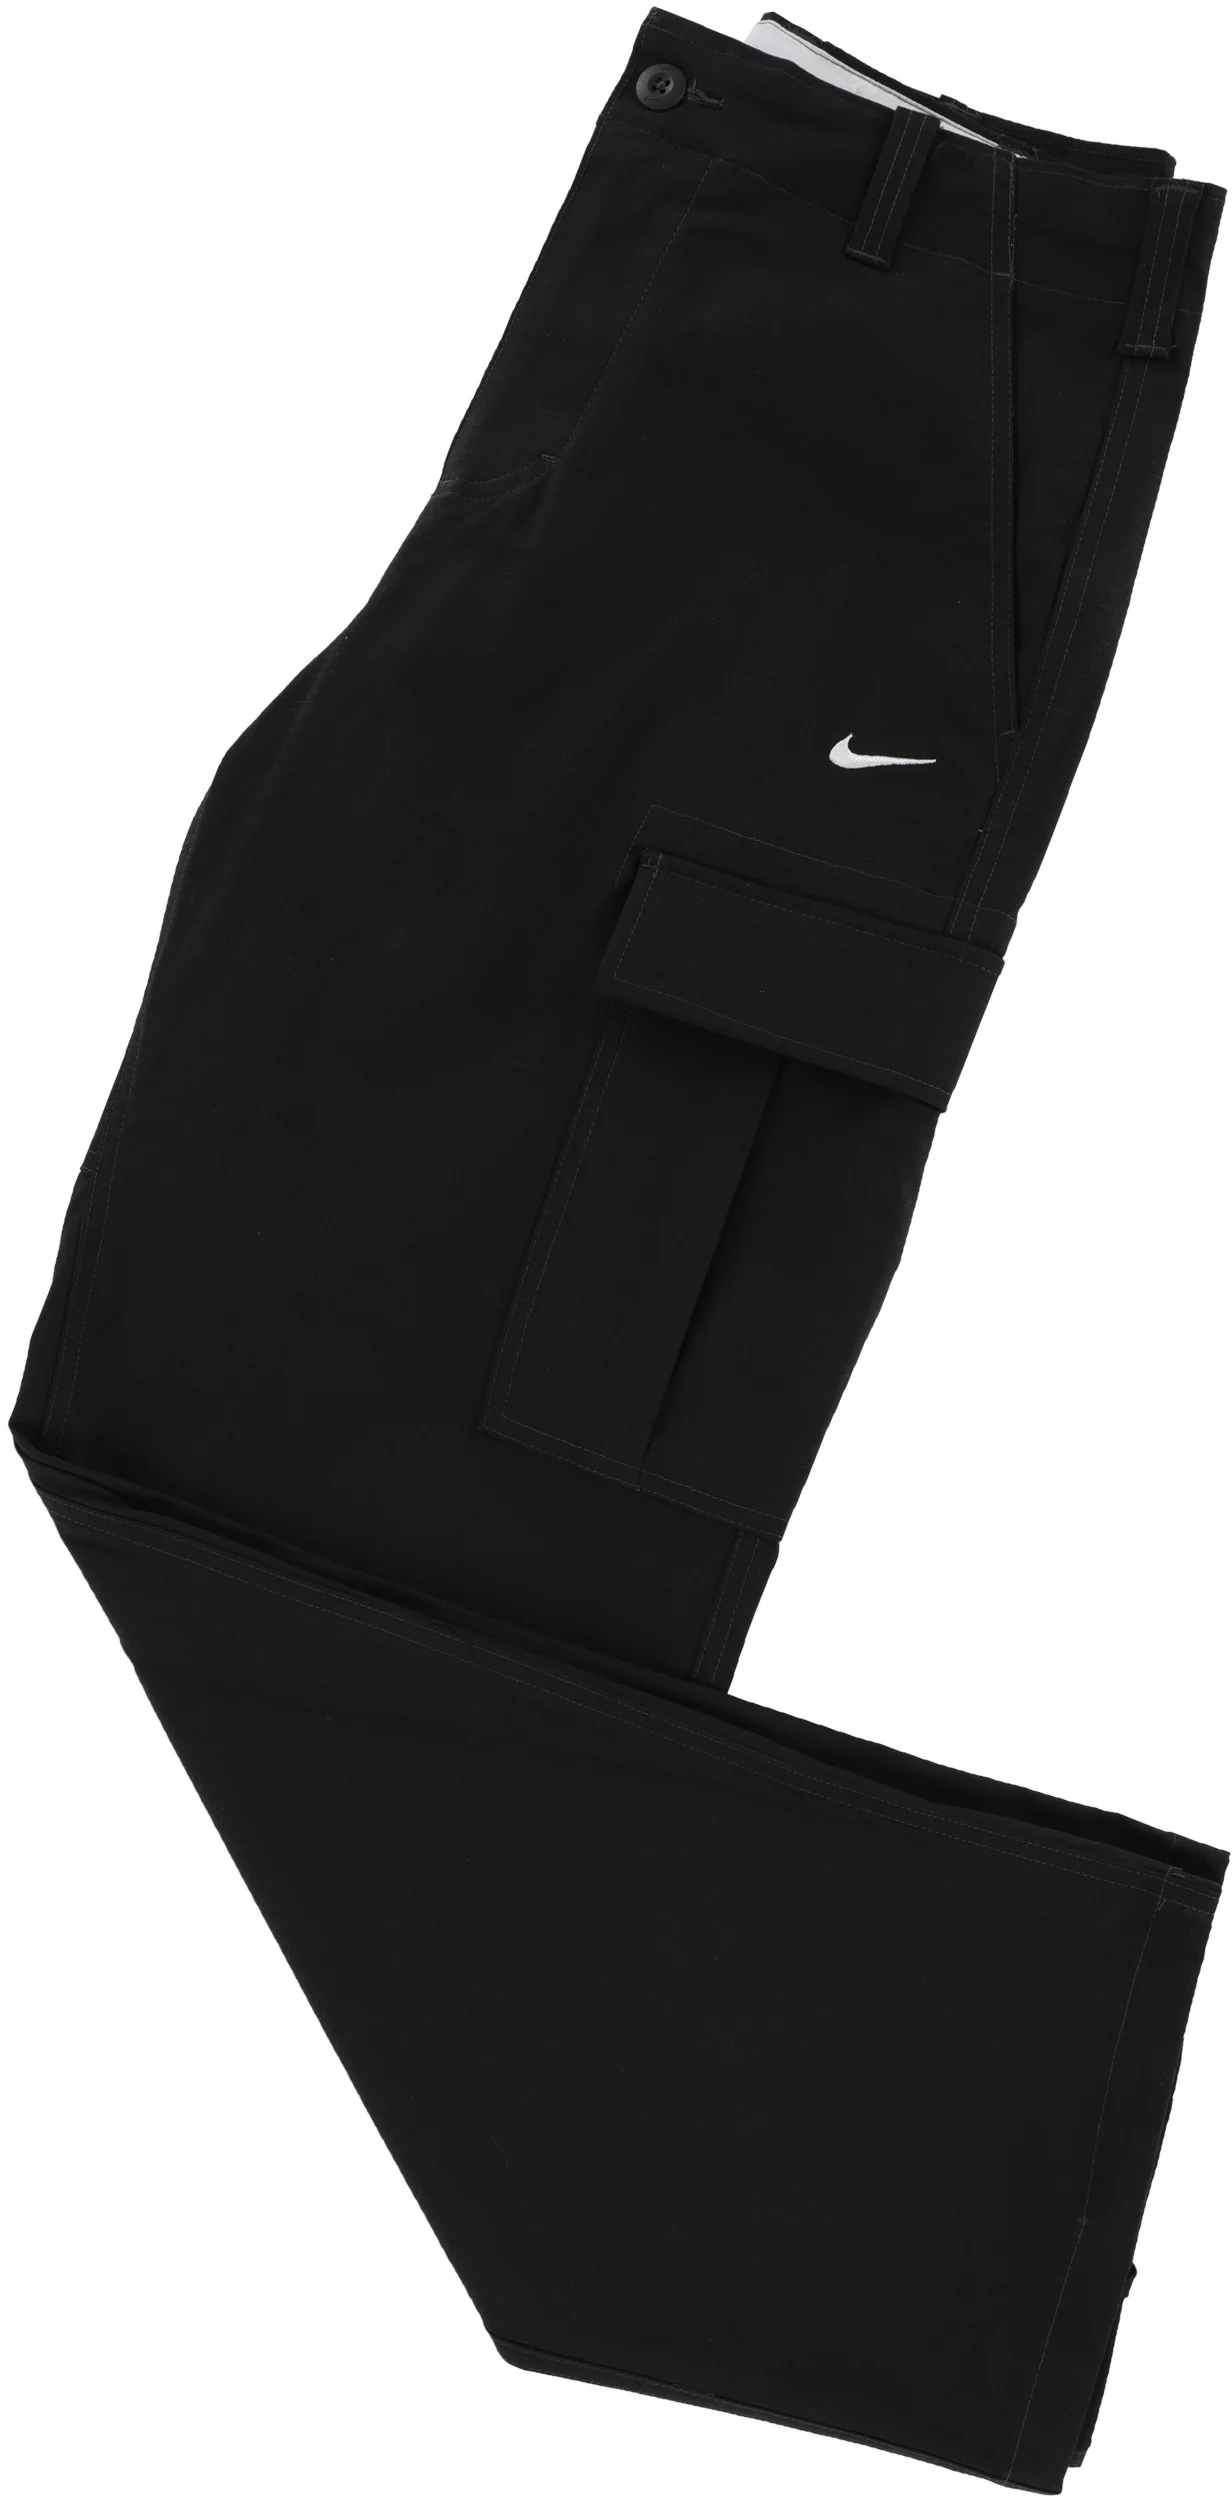 Nike Snowboarding Cargo Pants Review - Tactics.com 